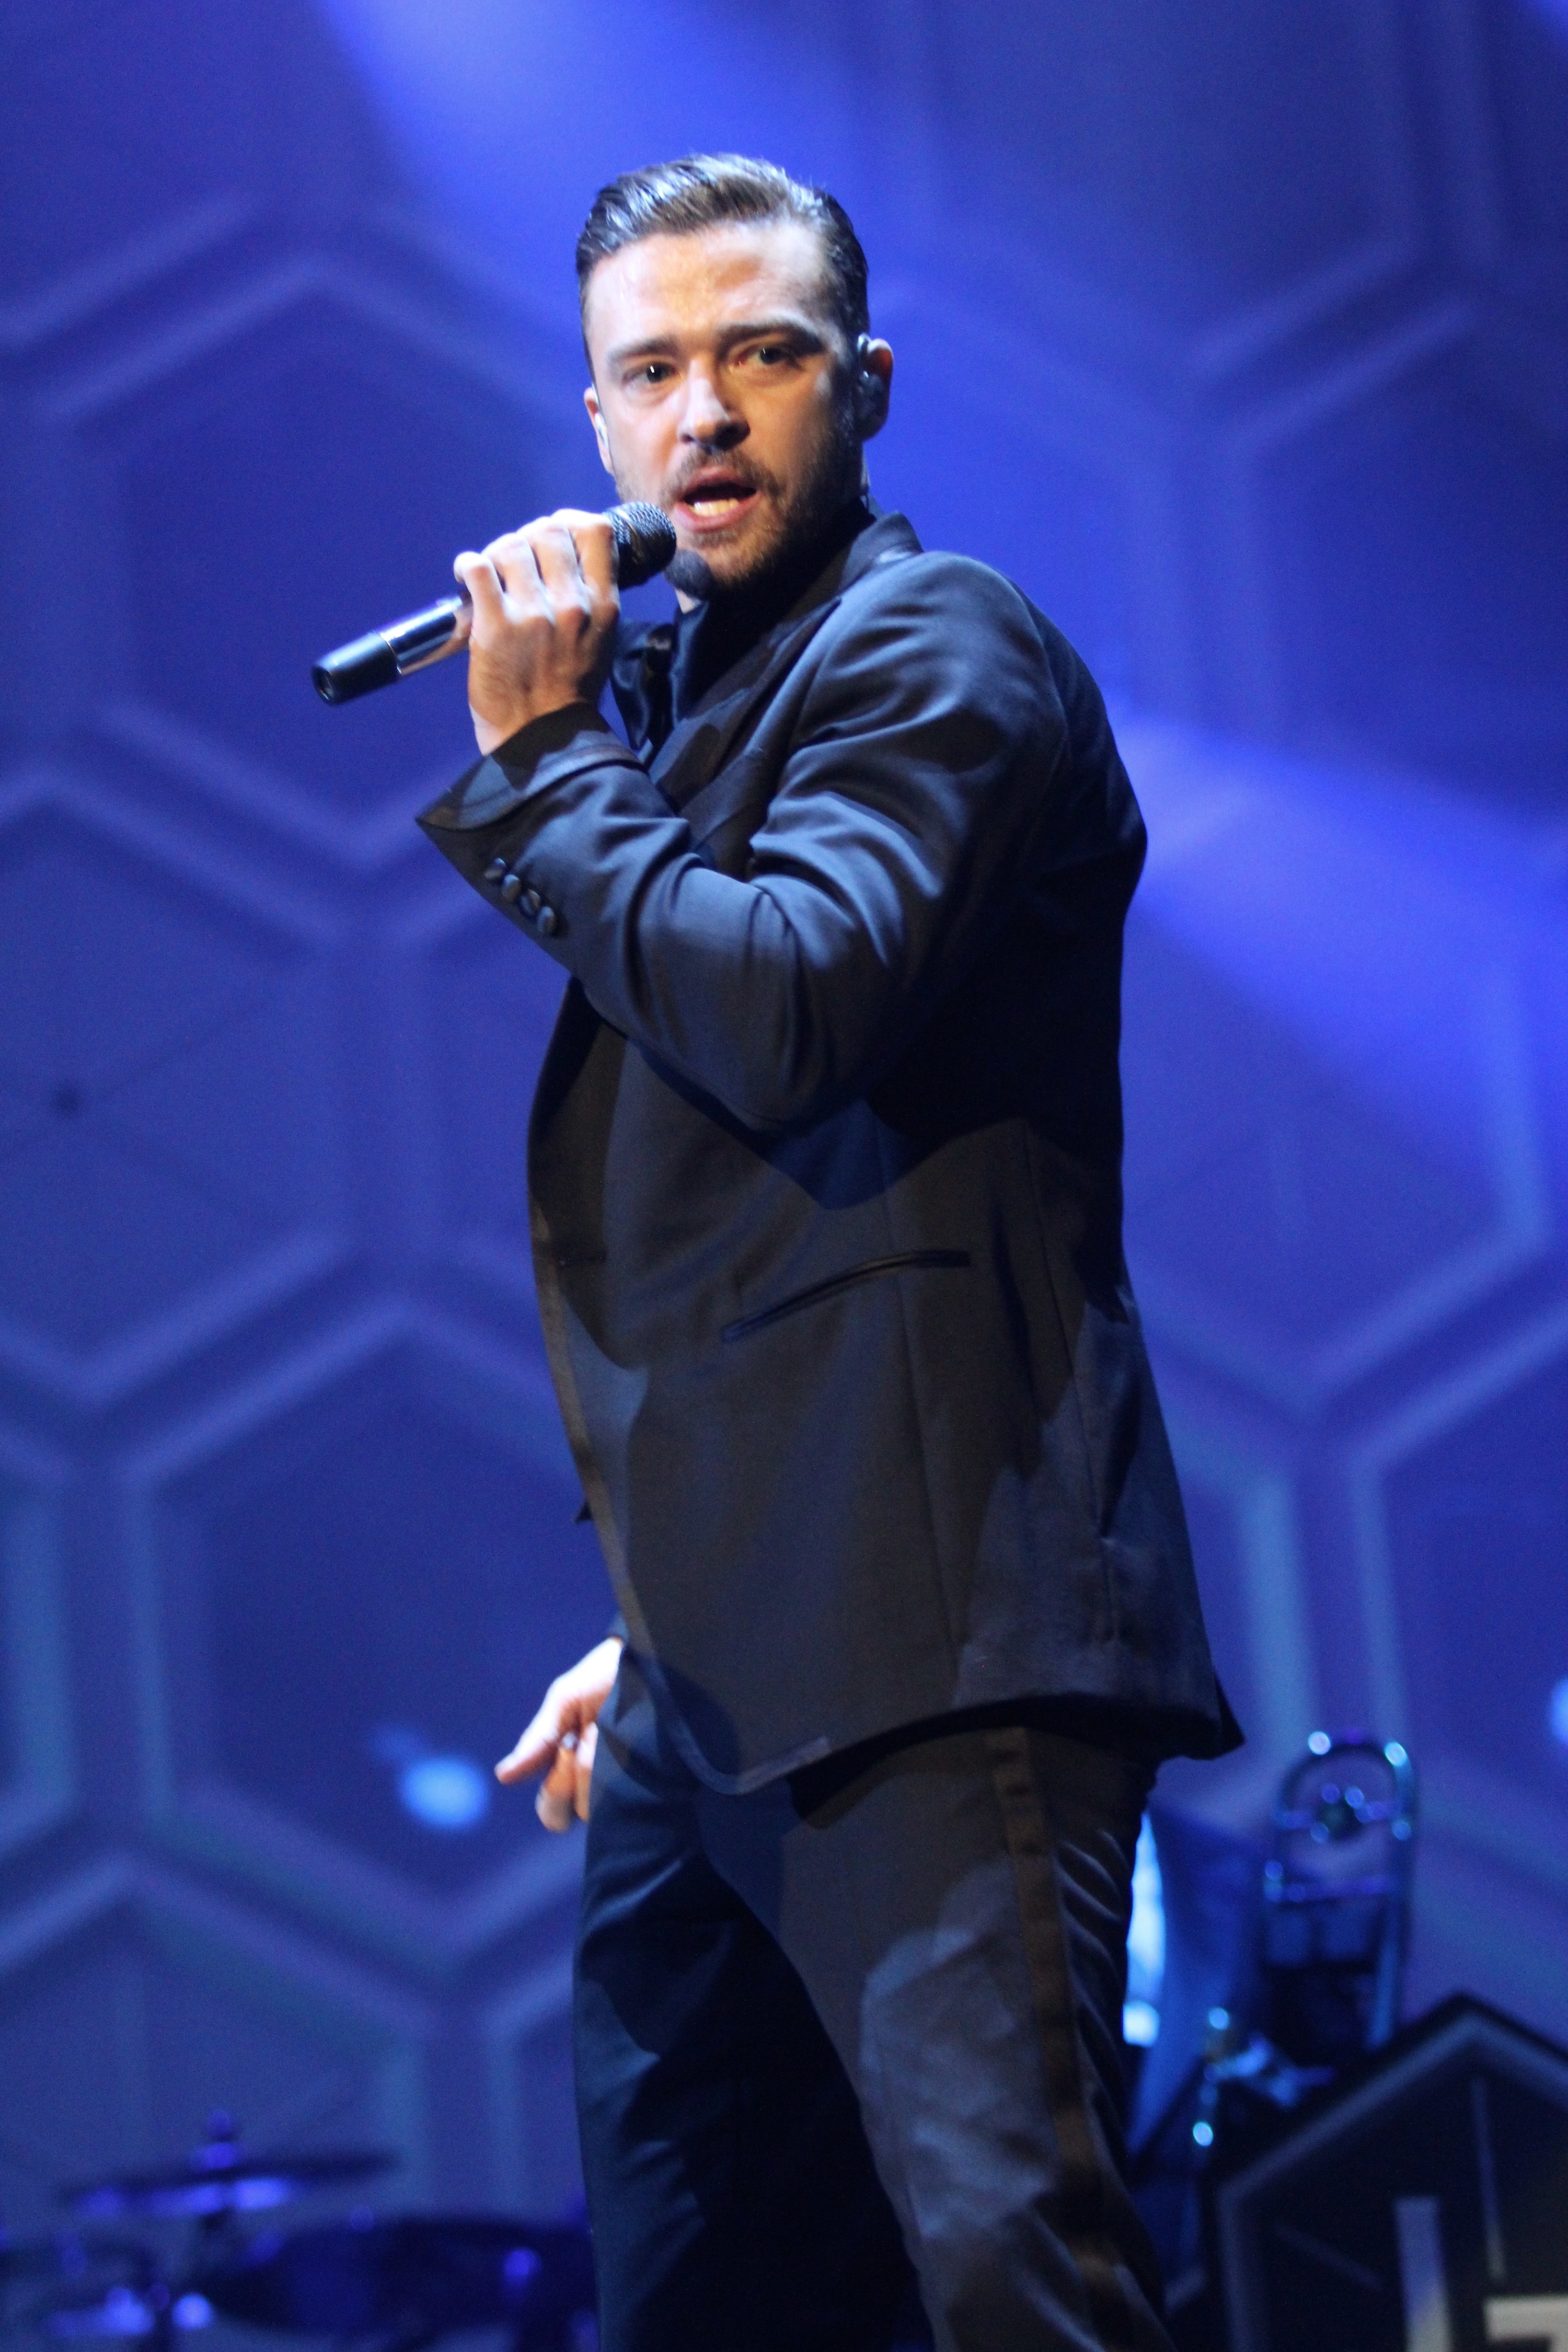 Timberlake performing